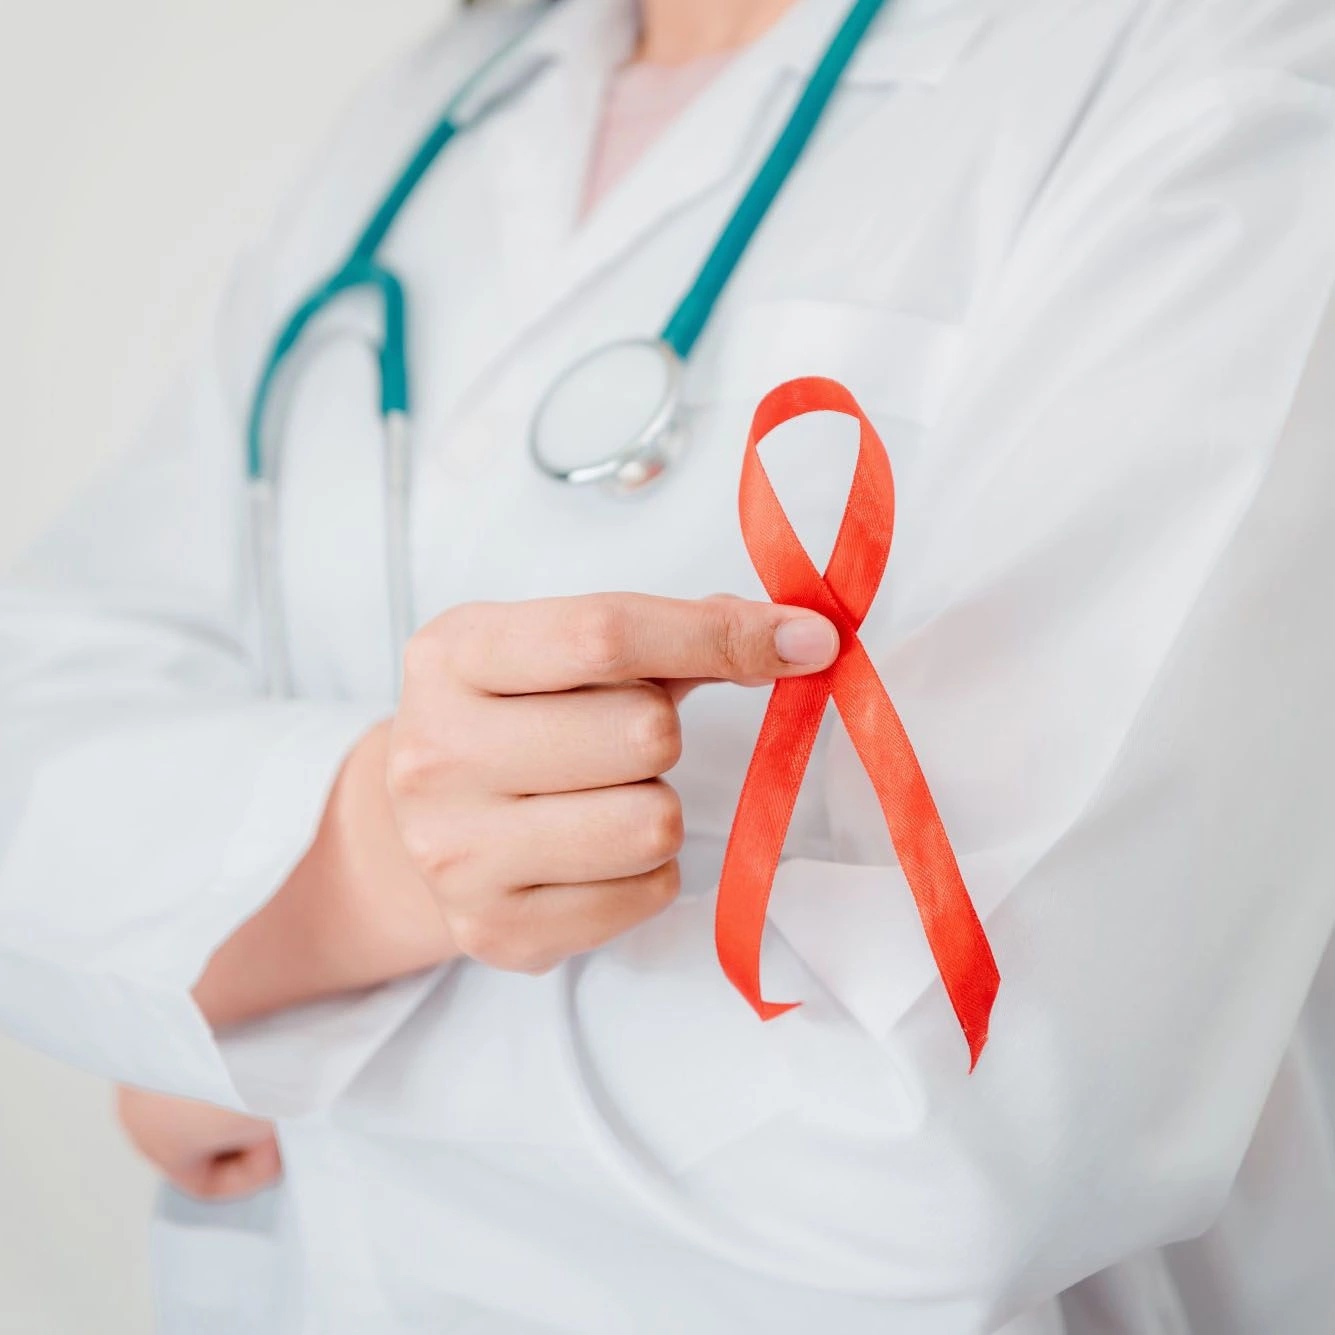 Жители Ачинска могут получить консультацию по вопросам профилактики ВИЧ-инфекции.